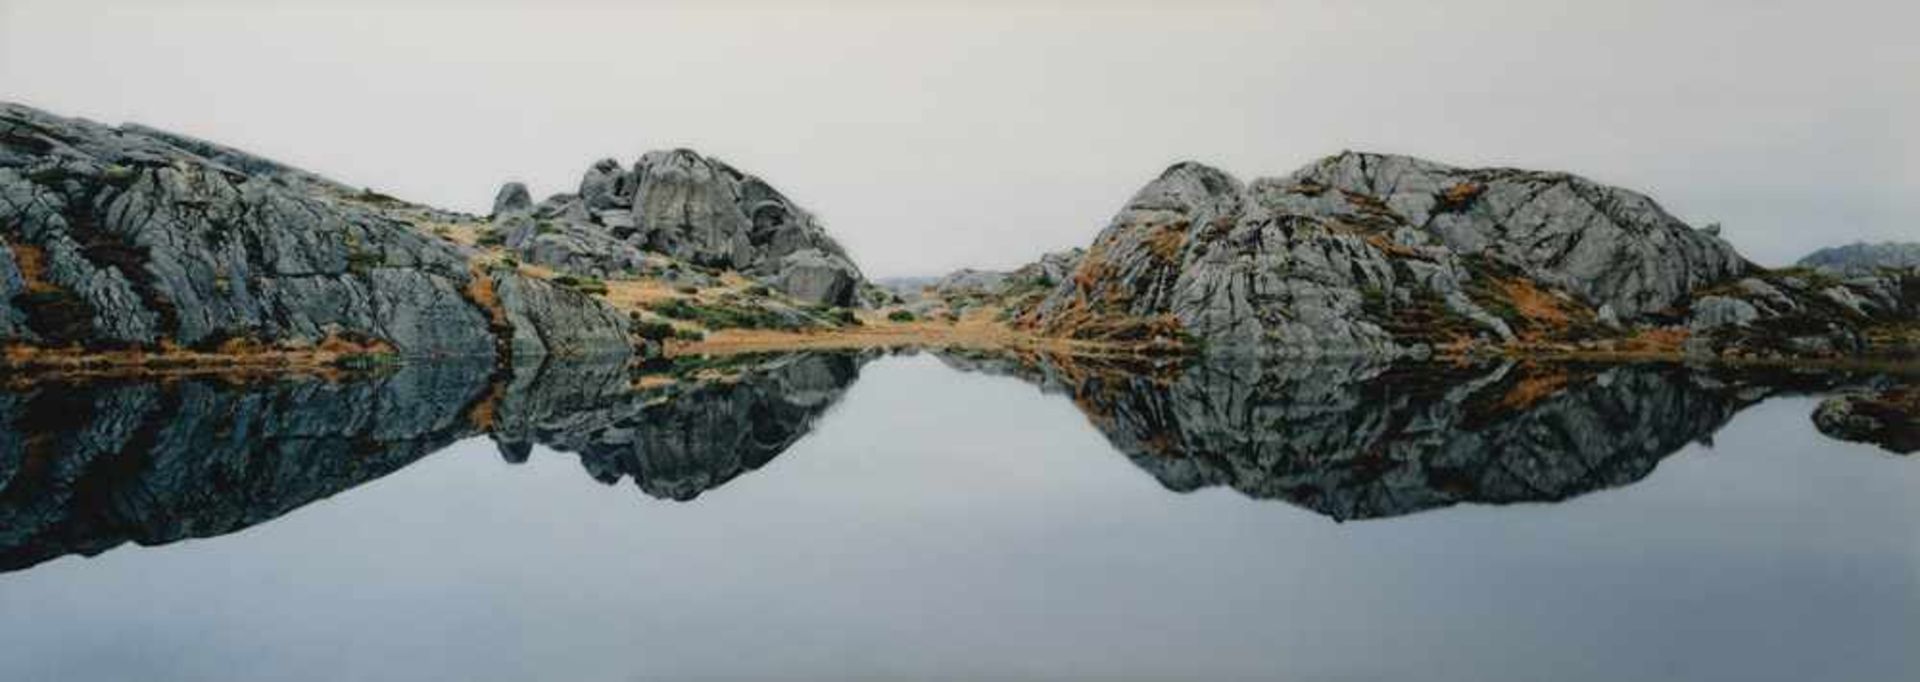 Mosler, Axel M.Dortmund, geboren 195362,5 x 180cm,R."Eikeland, Telemark, South Norway",